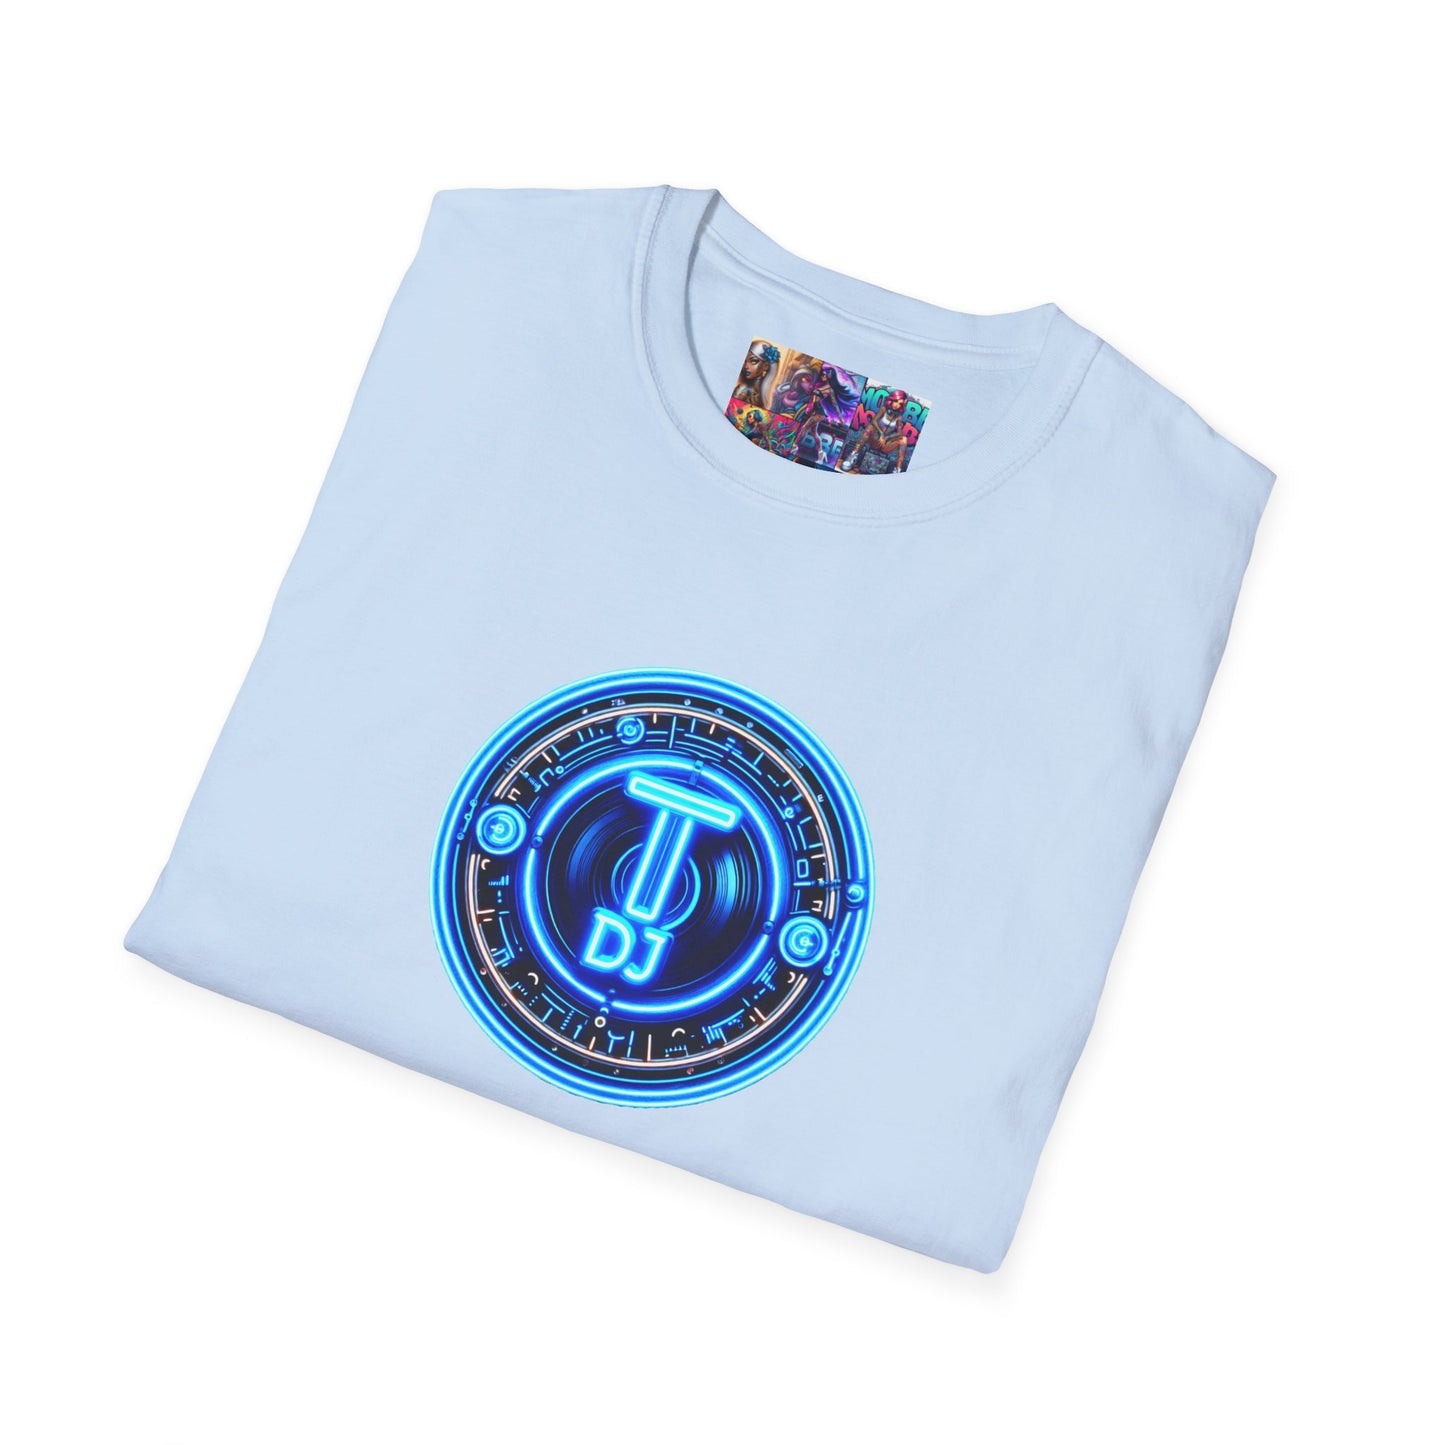 MDBTDJ#3 Unisex Softstyle T-Shirt Tattooed Dj's Limited Edition, T-Shirt, Tattooed Djs Shop